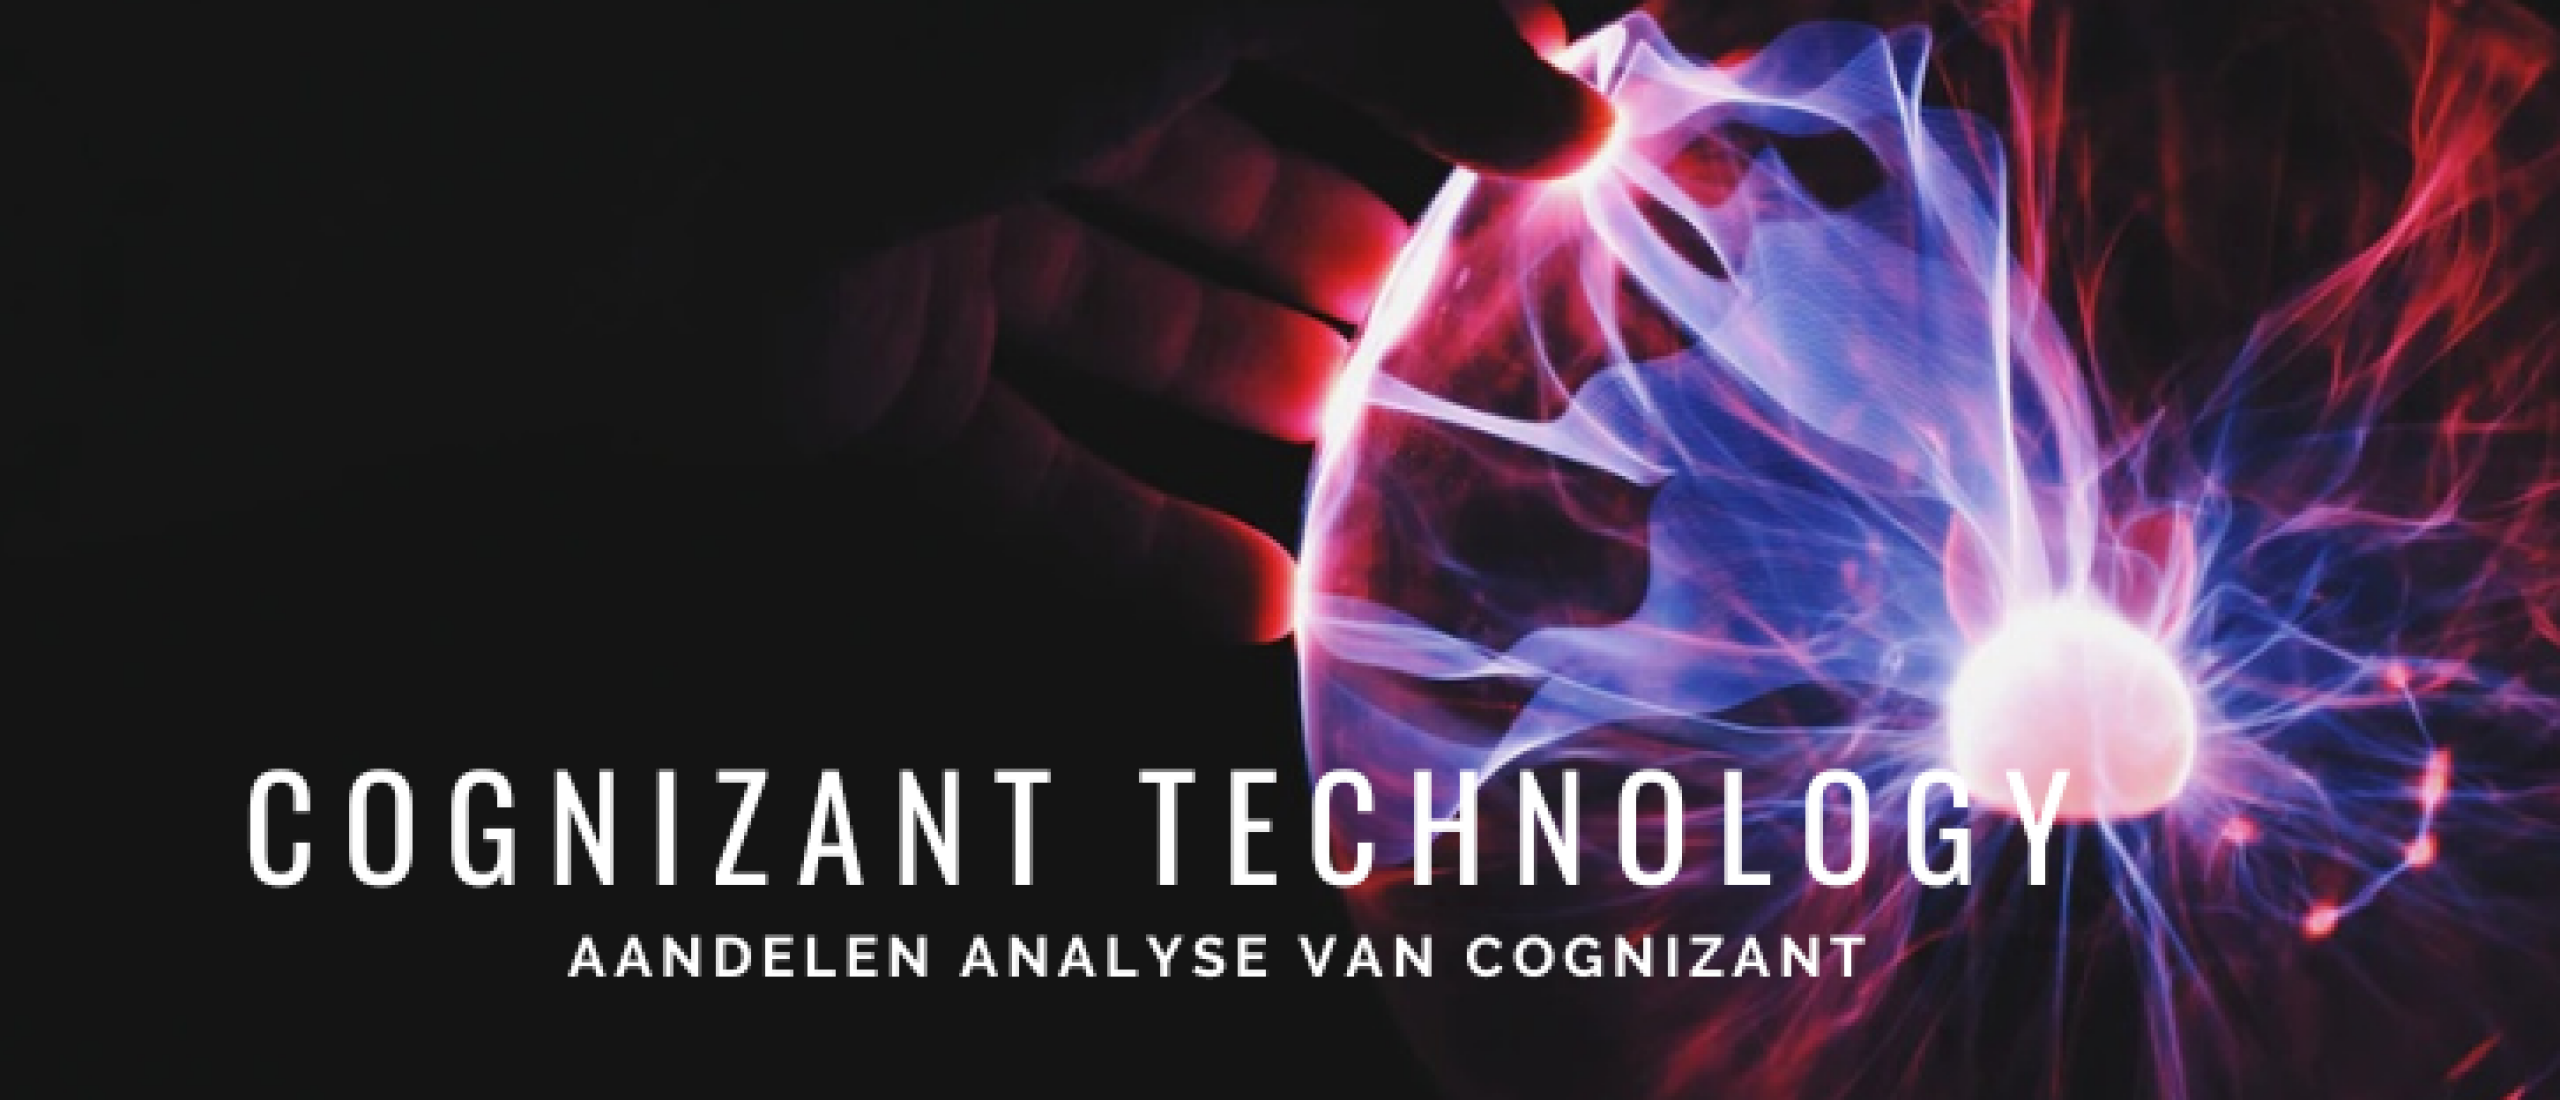 Cognizant Technology Solutions Aandelen Kopen? Analyse +33% Groei | Happy Investors